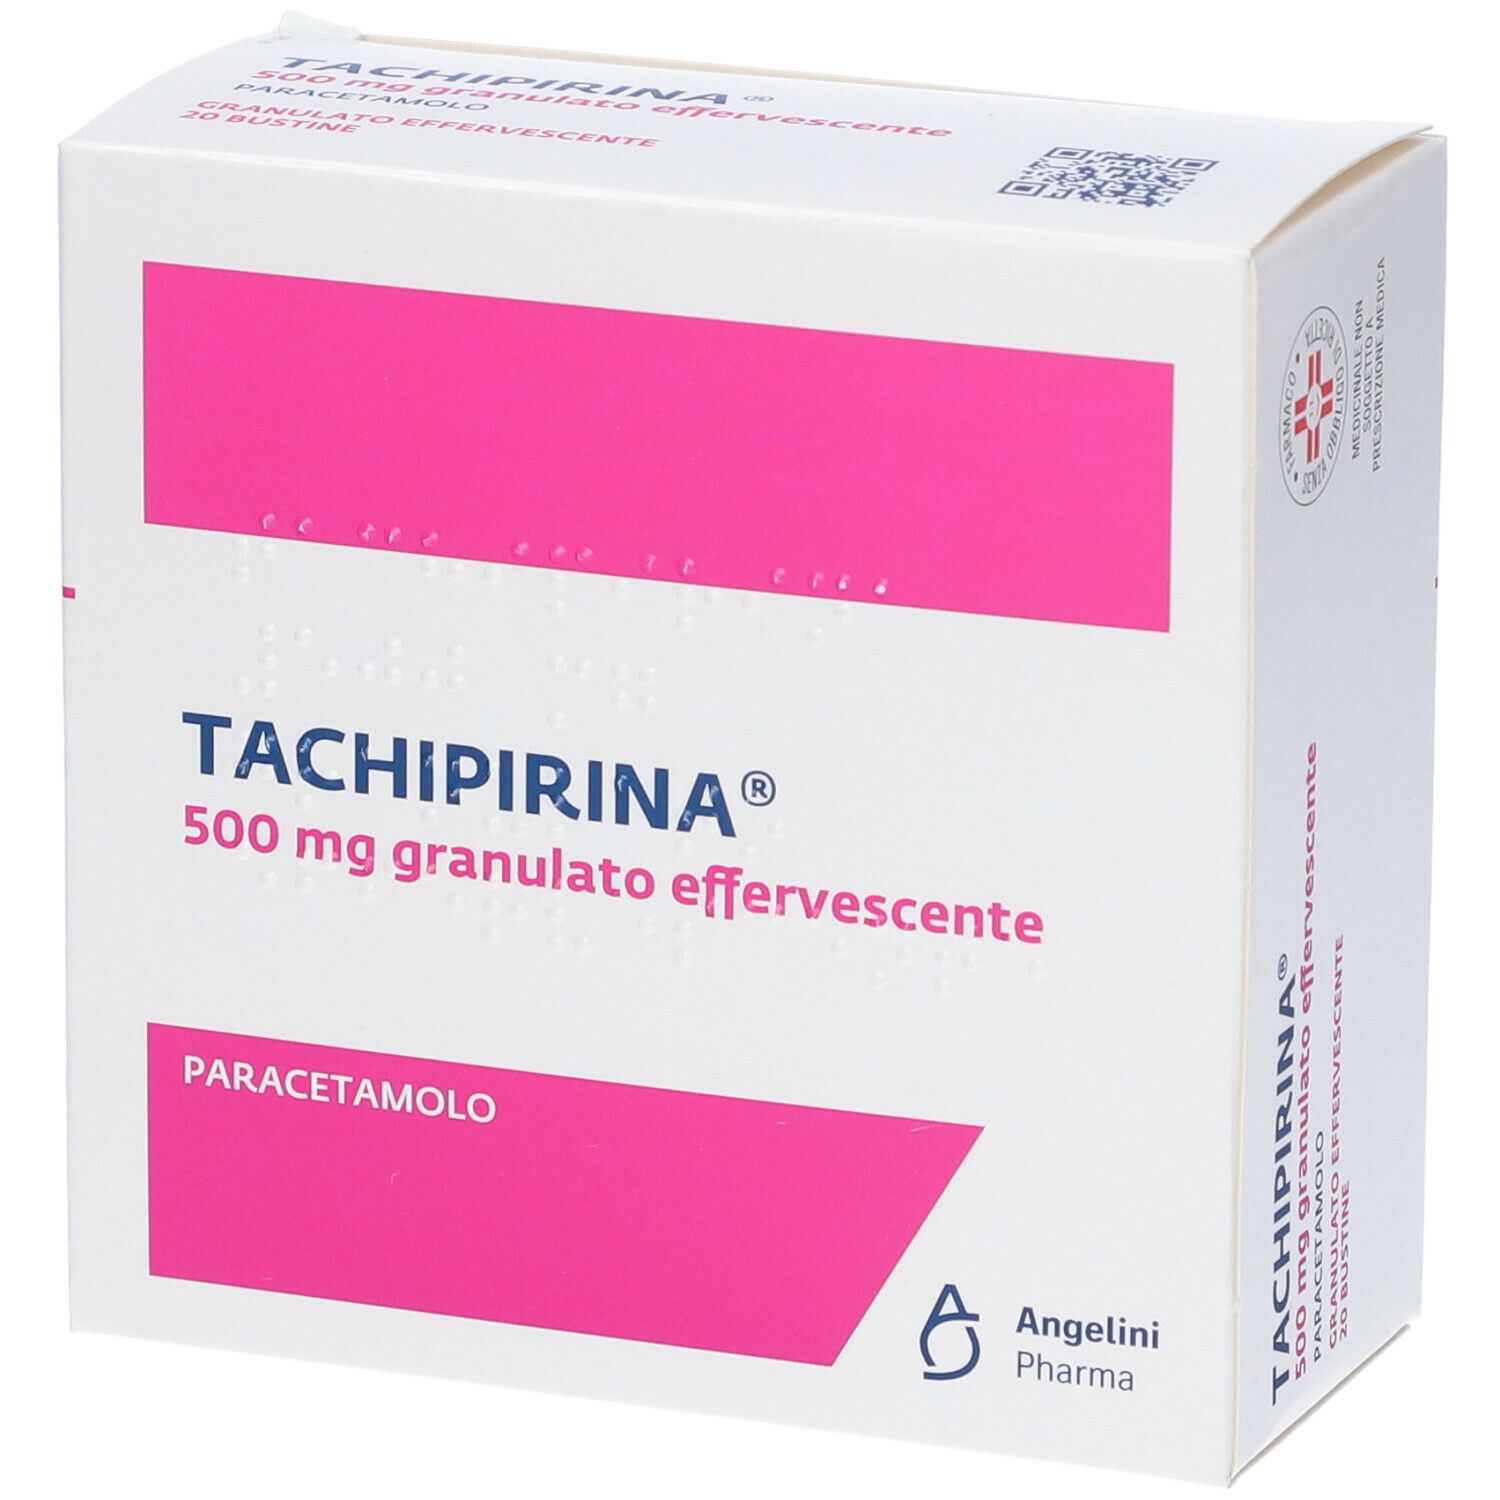 TACHIPIRINA® 500mg Granulato Effervescente